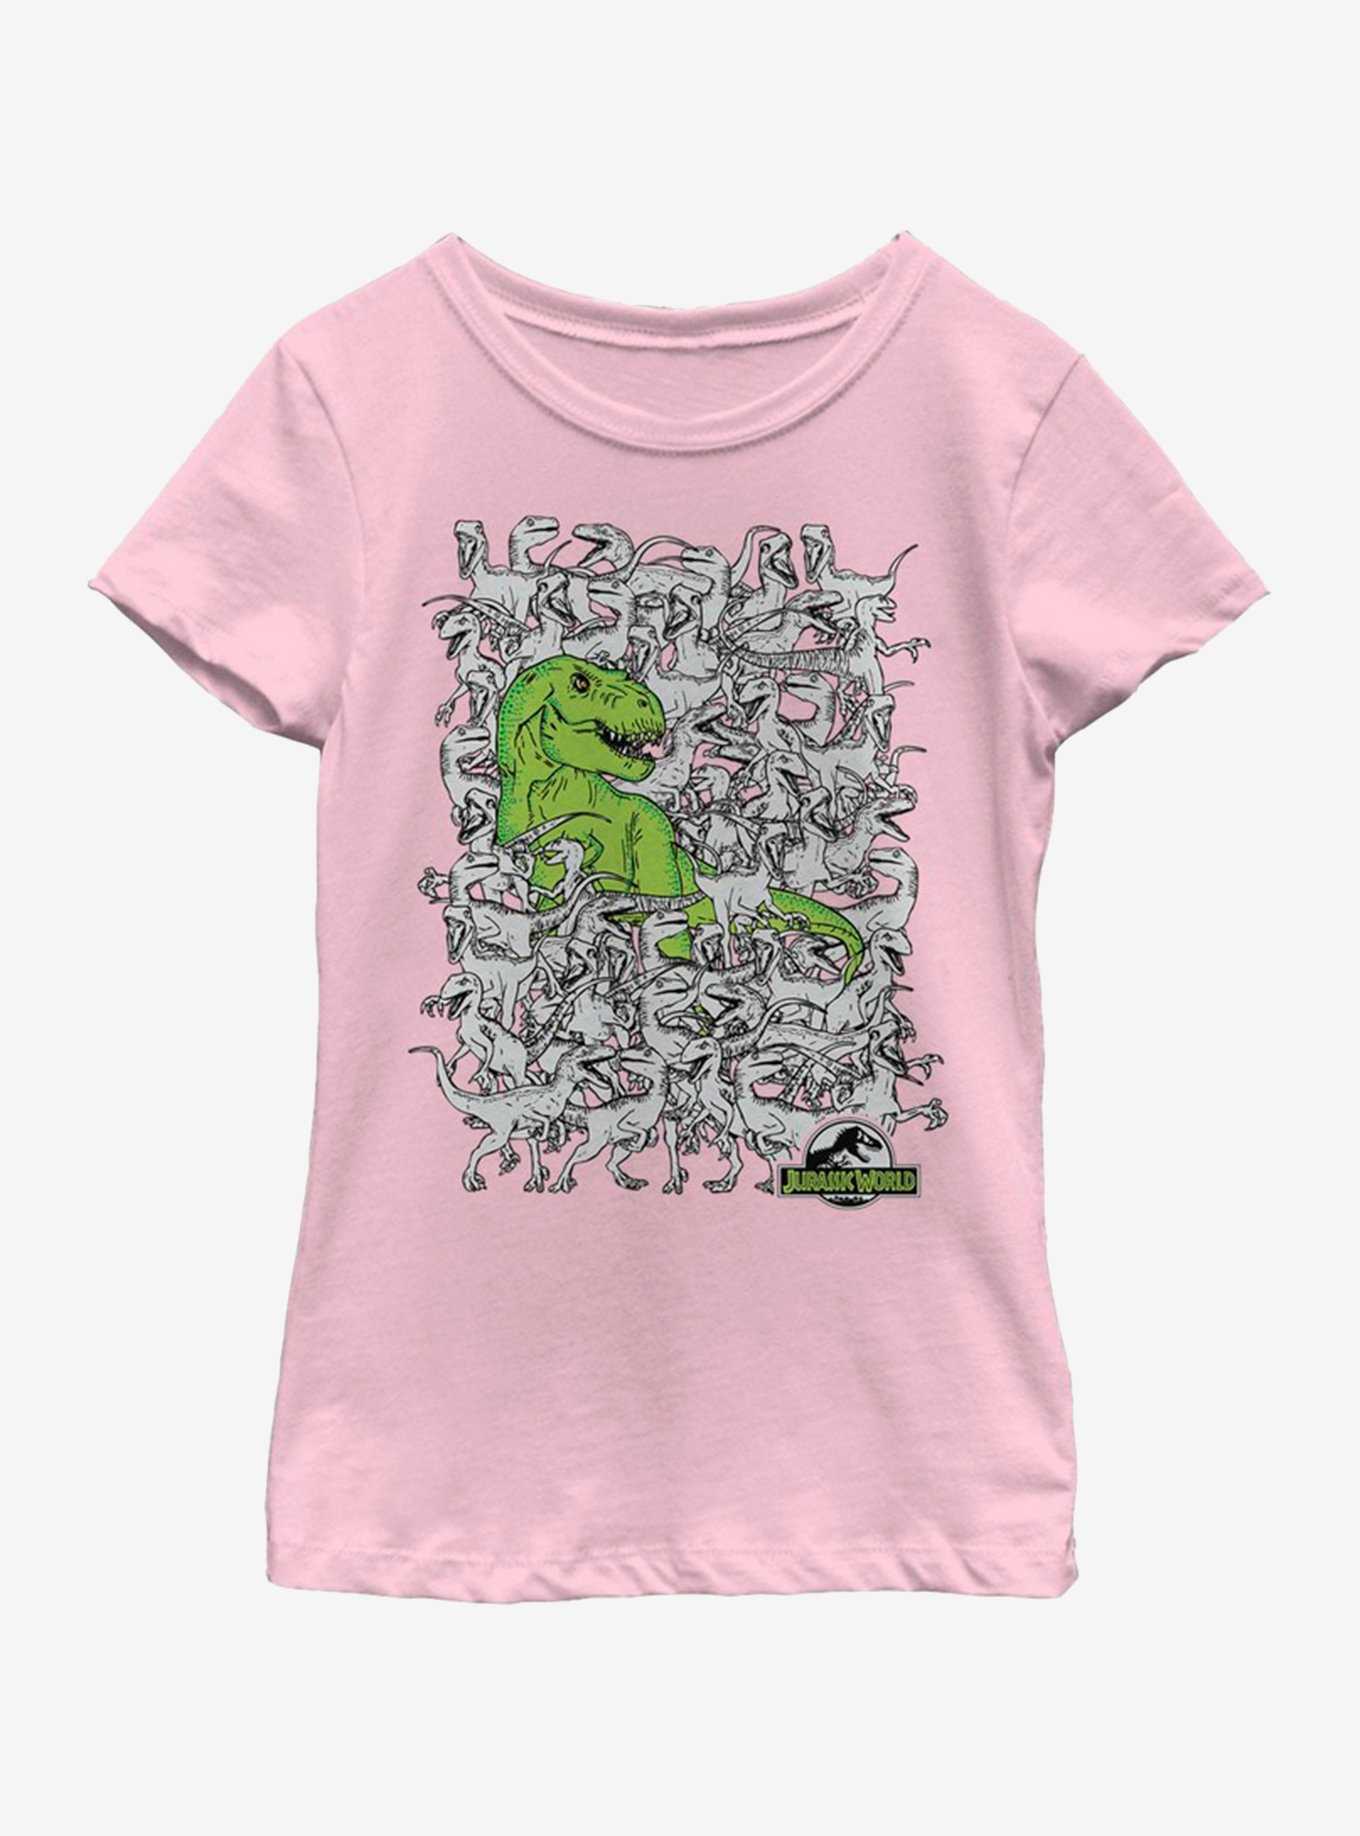 Jurassic Park Hidden Rex Youth Girls T-Shirt, , hi-res